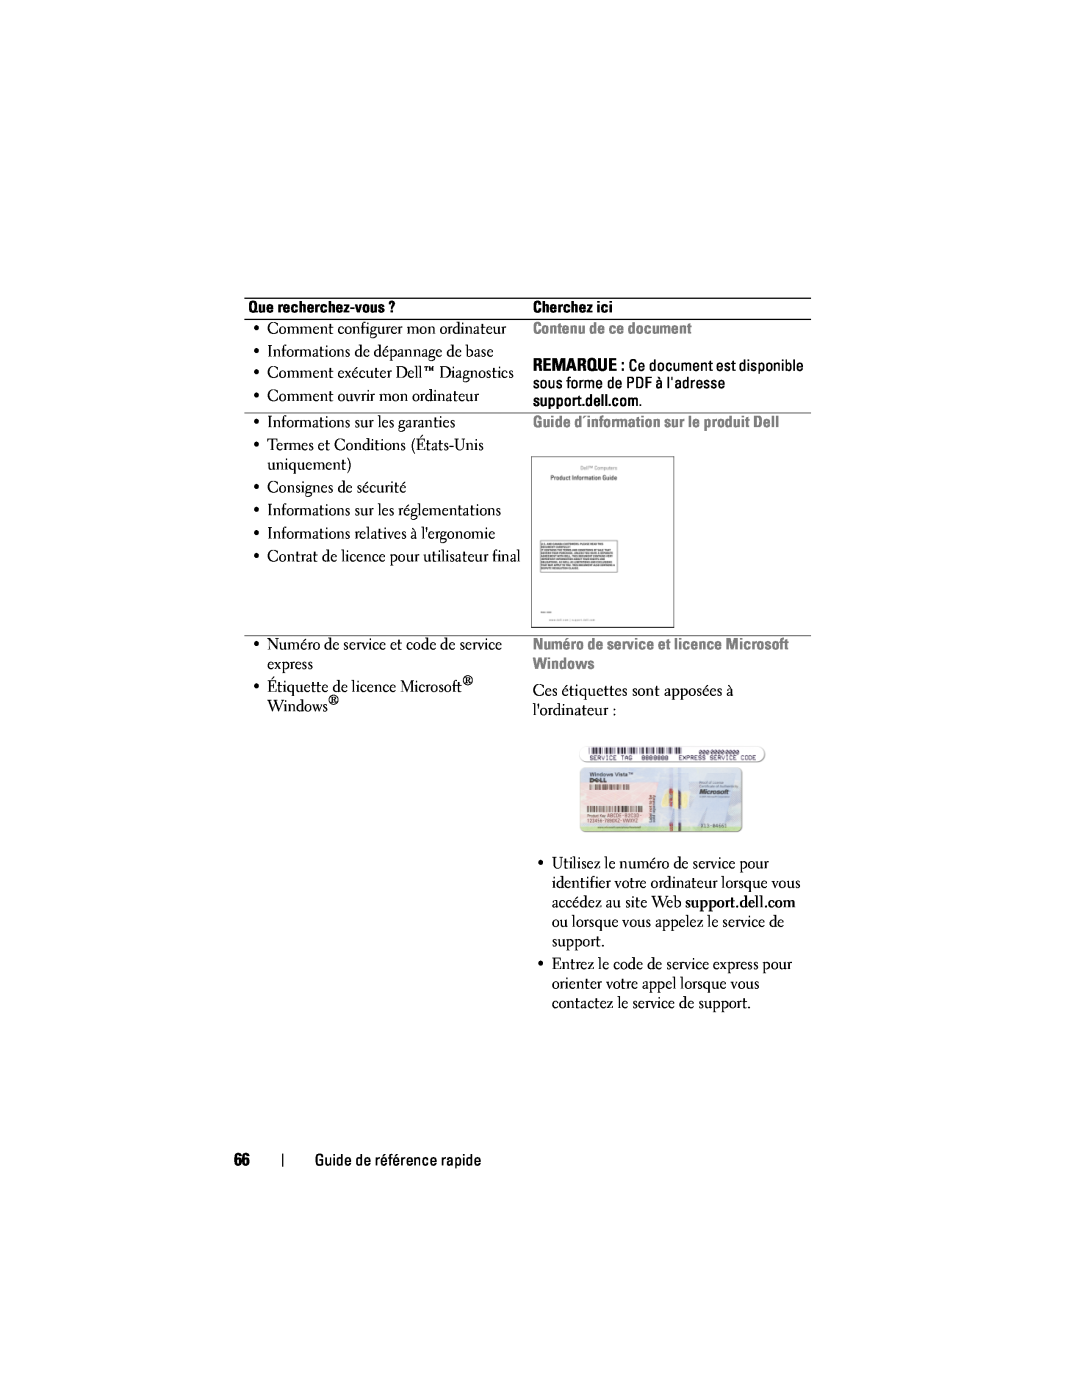 Dell PP18L Contenu de ce document, Guide d´information sur le produit Dell, Numéro de service et licence Microsoft Windows 